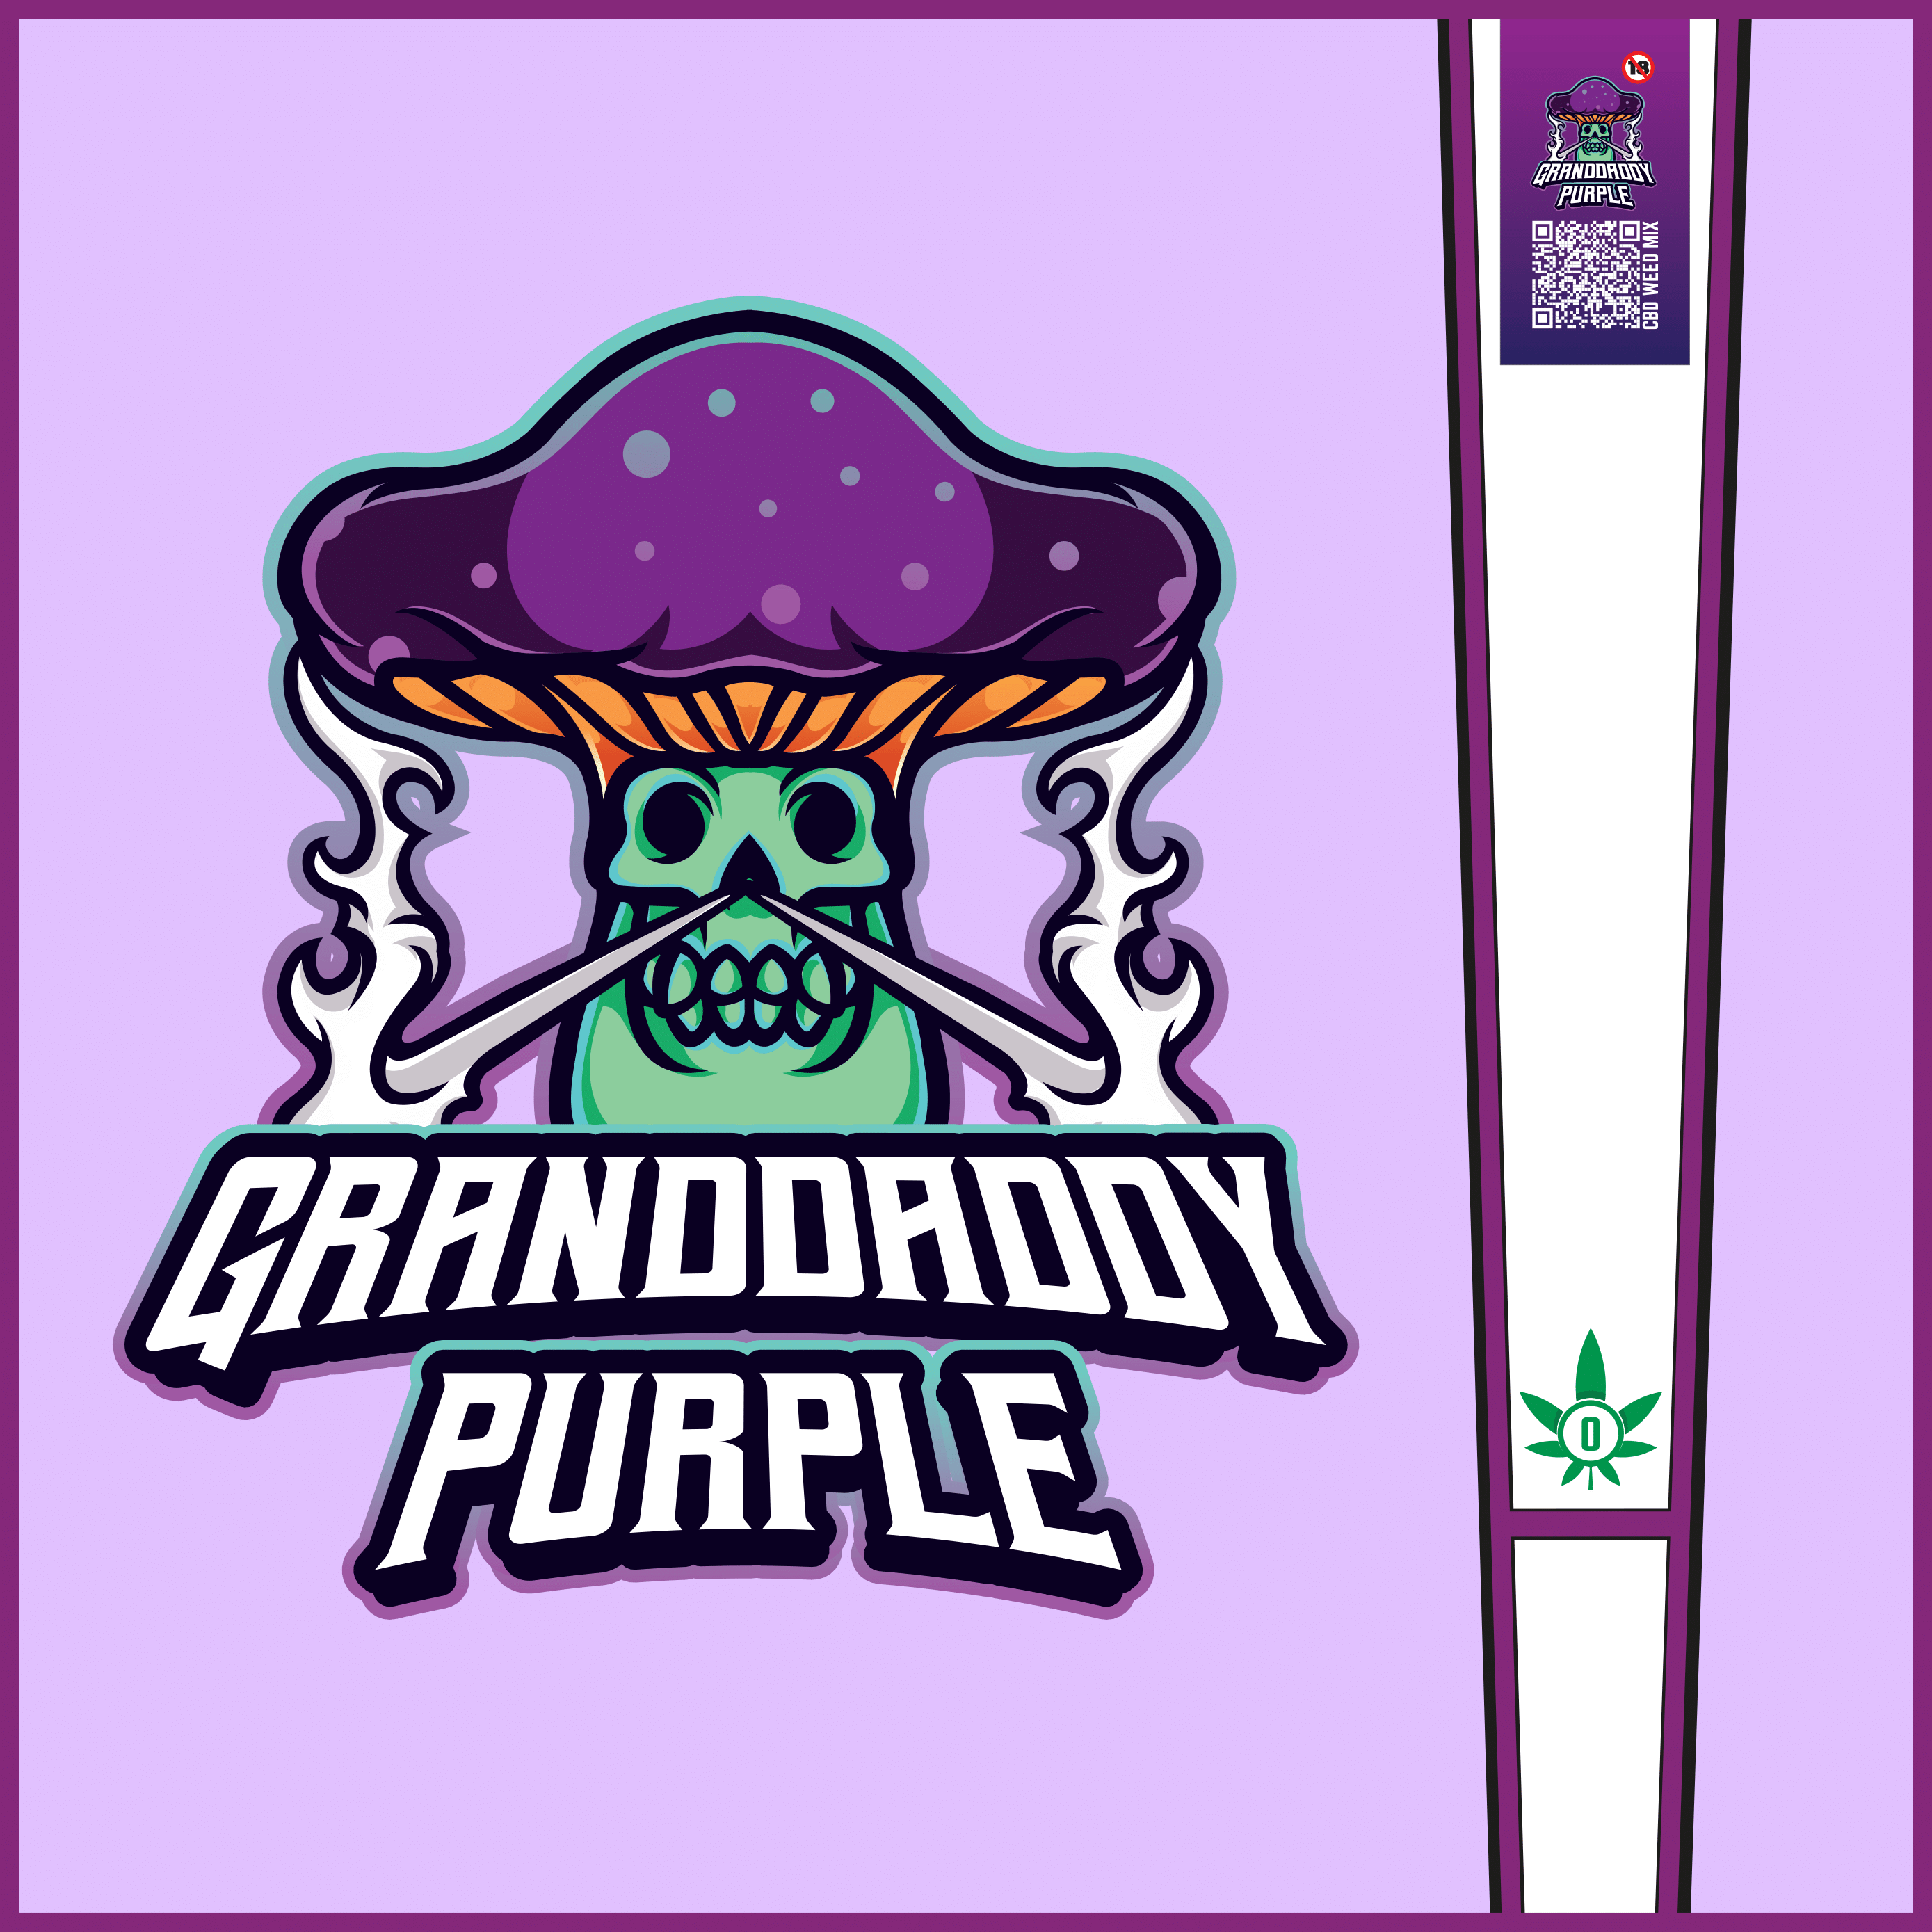 CBDice - Gran Daddy Purple Pre-rolled